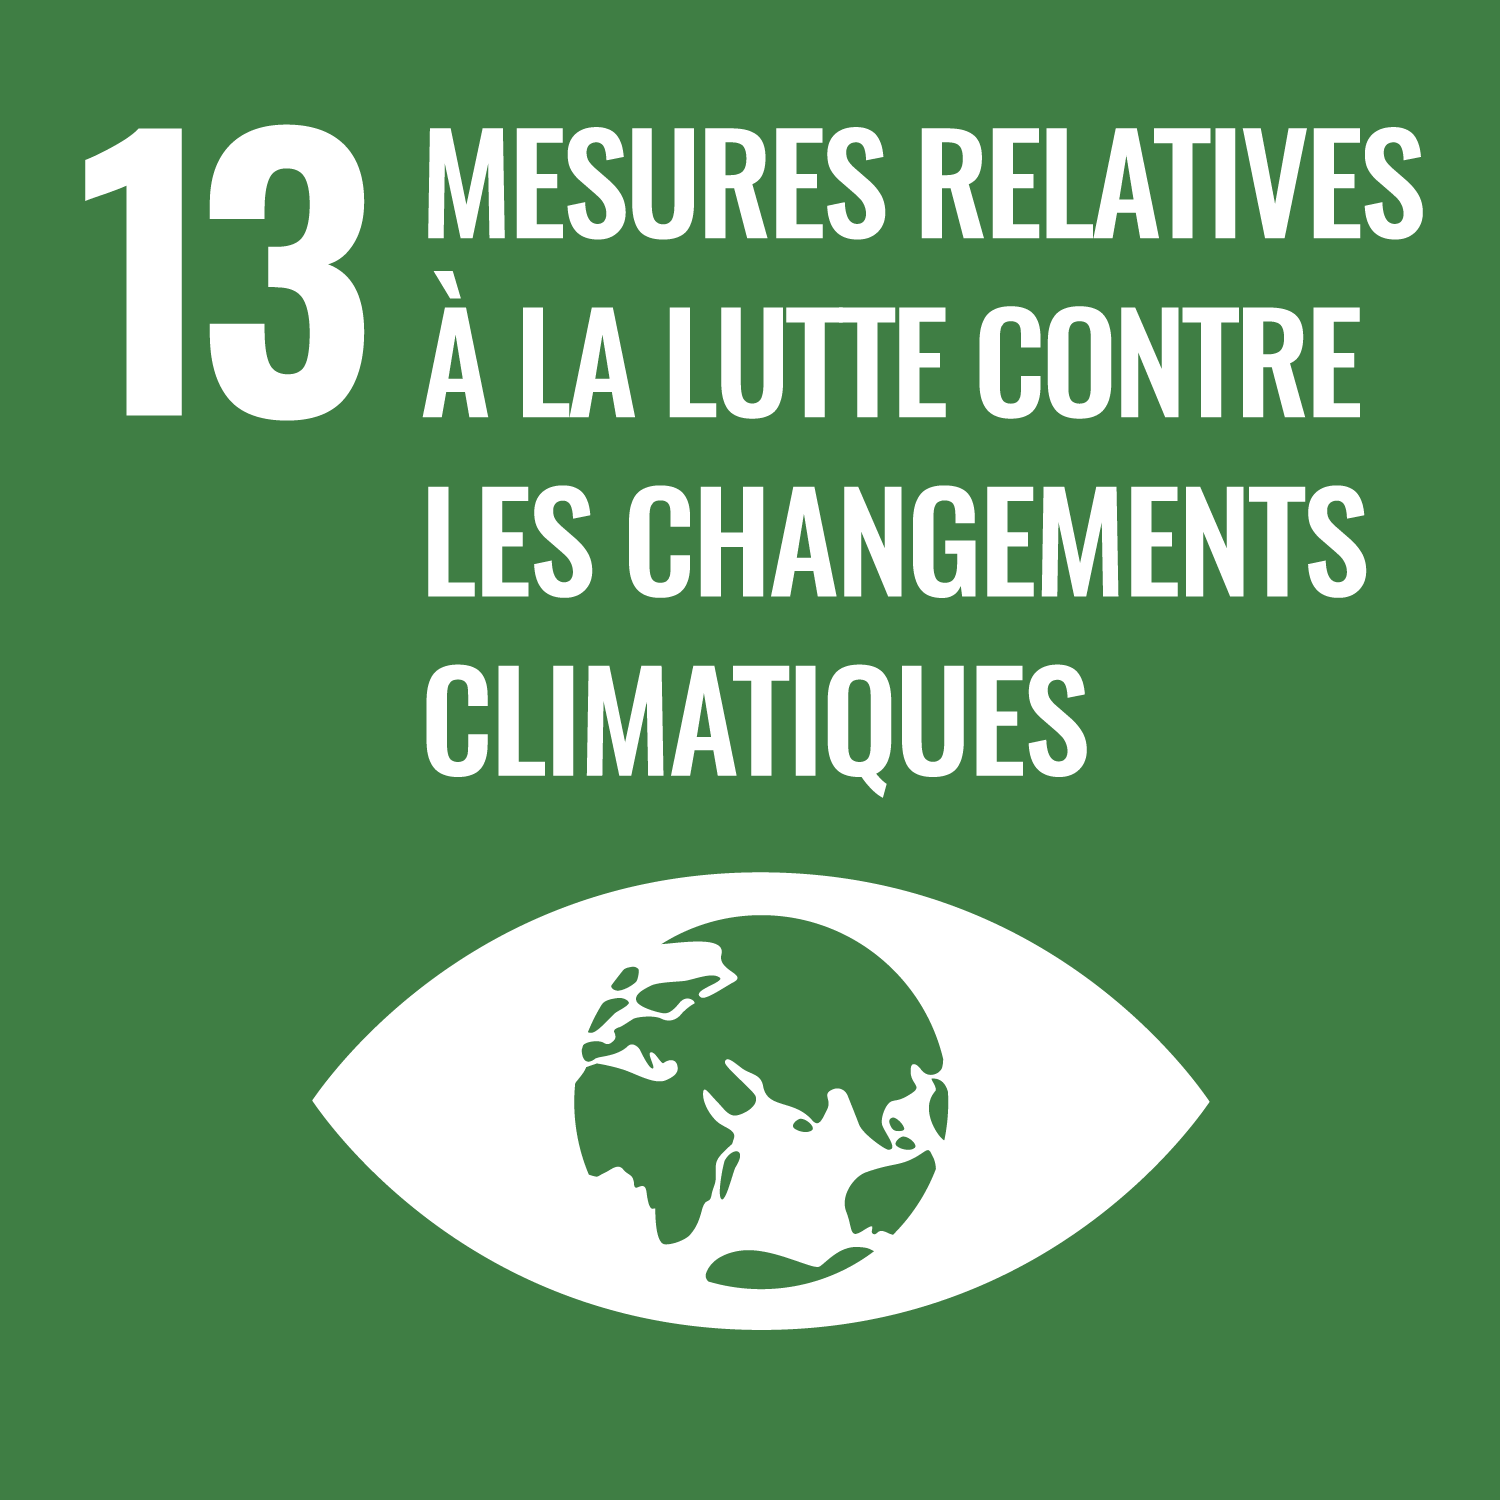 13. Mesures relatives à la lutte contre les changements climatiques